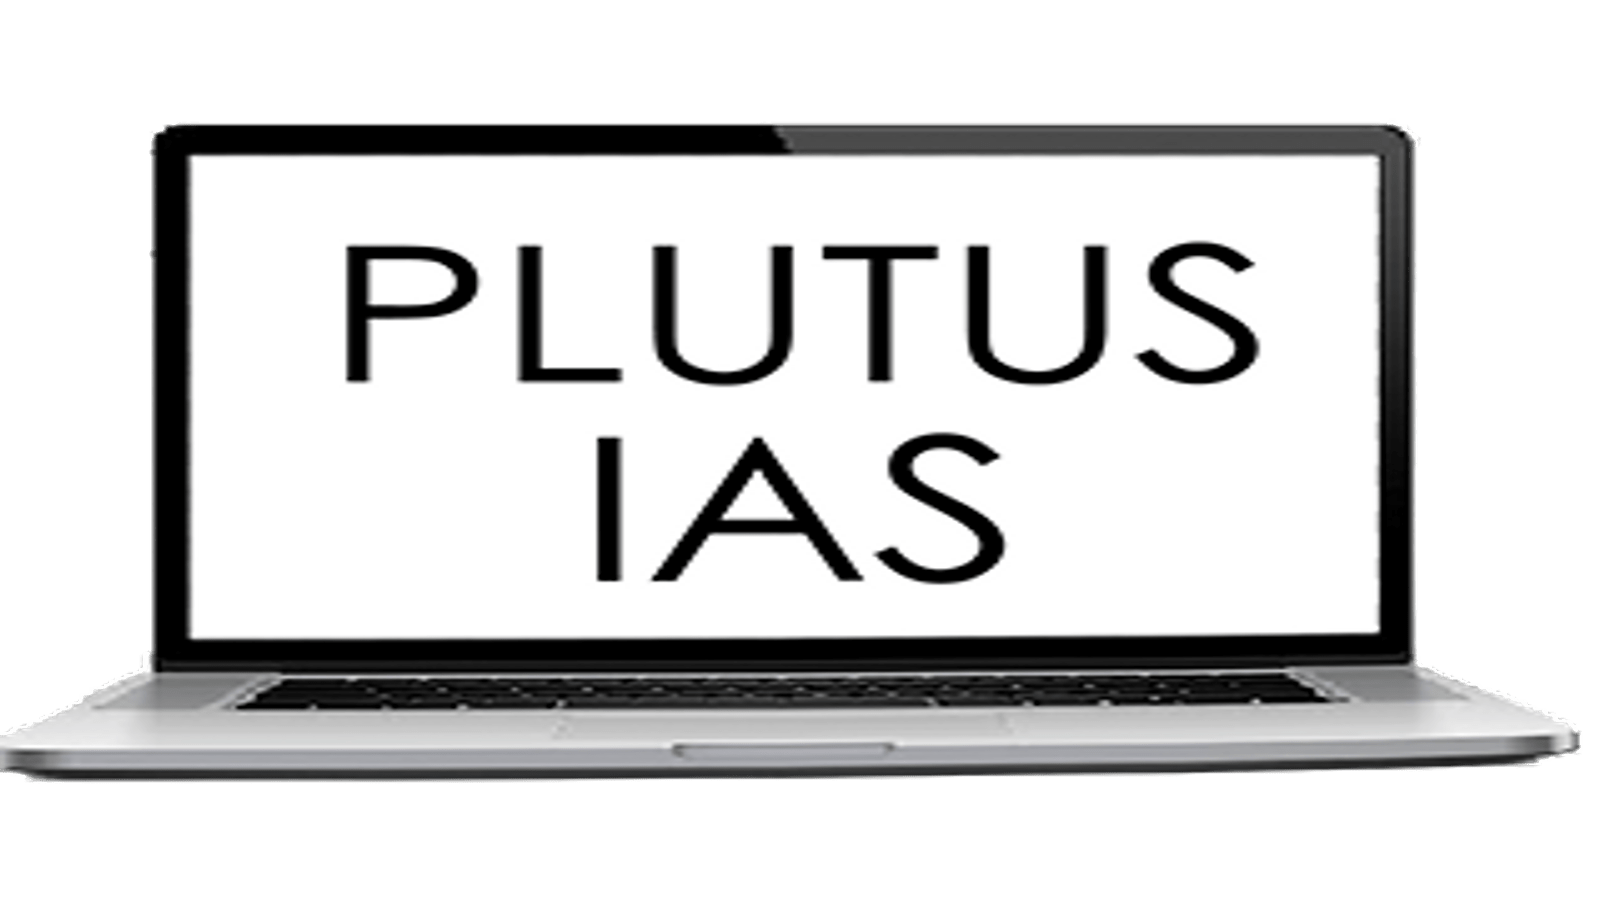 Plutus IAS Online Coaching Pune